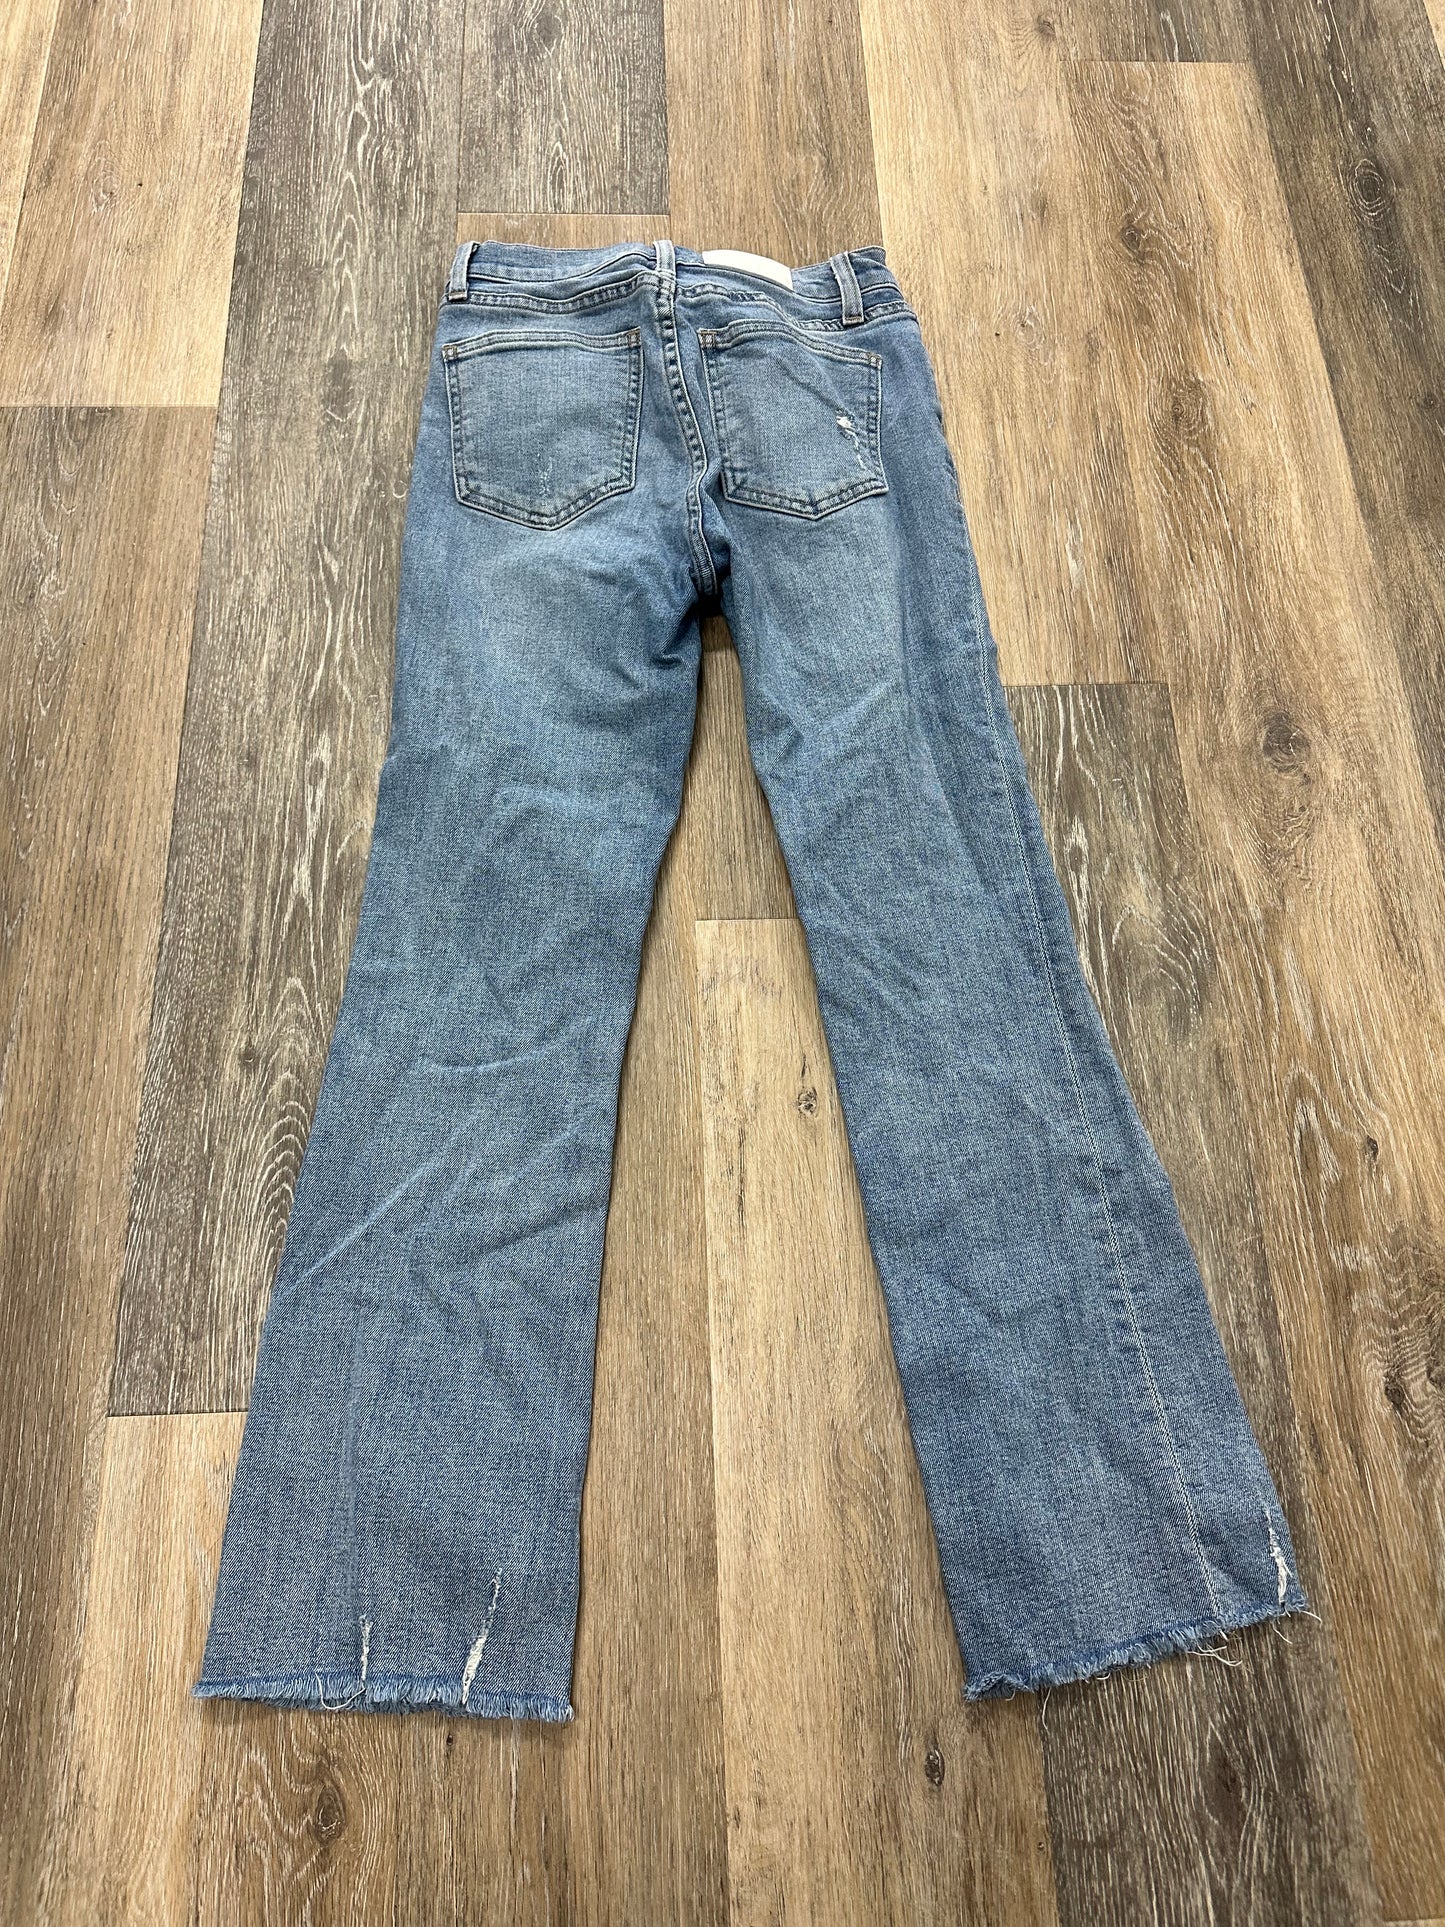 Jeans Skinny By Pistola  Size: 0/24